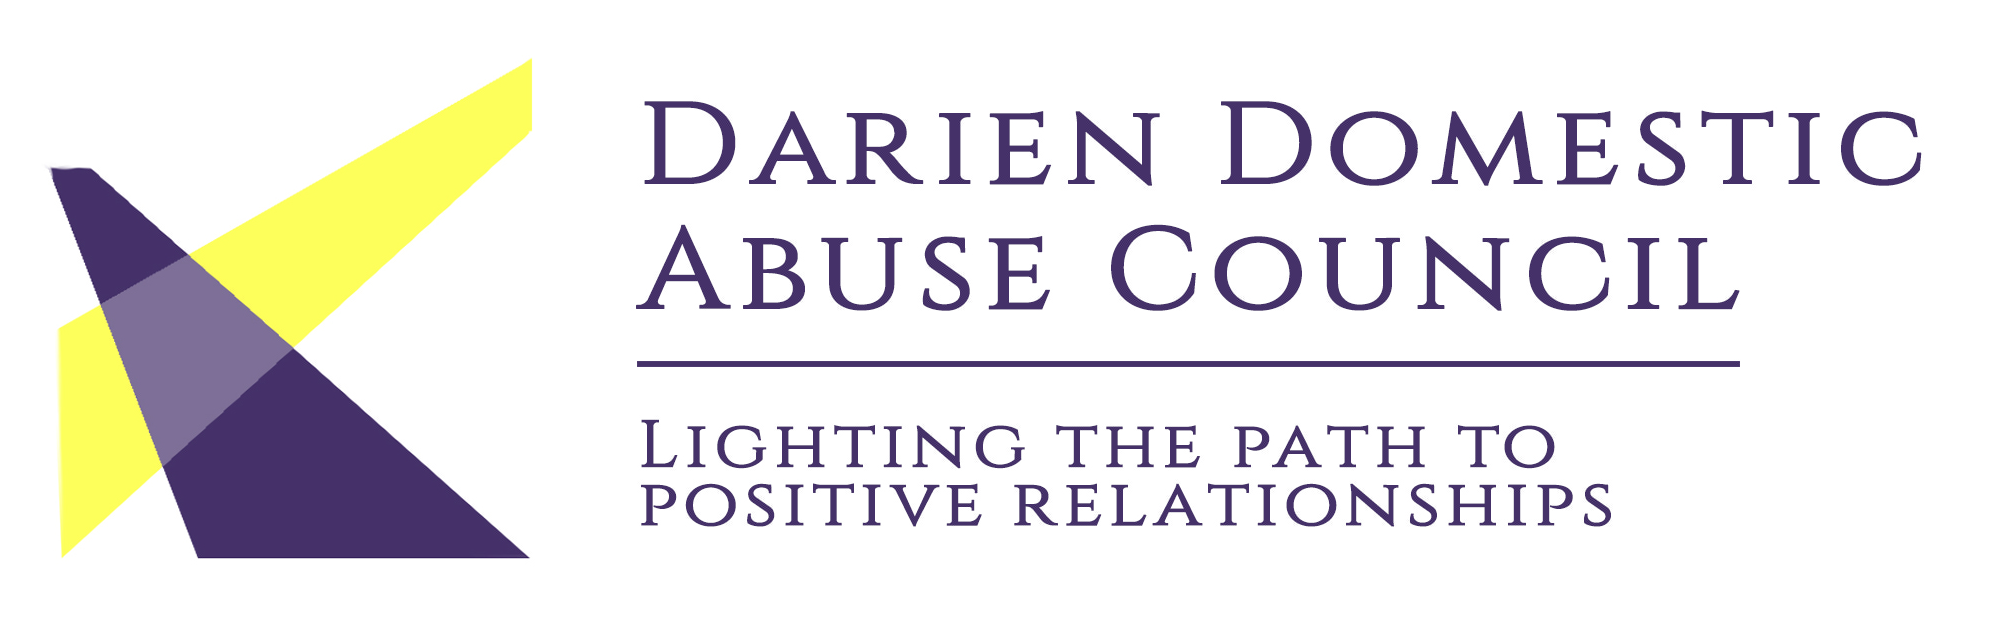 Darien Domestic Abuse Council, Inc